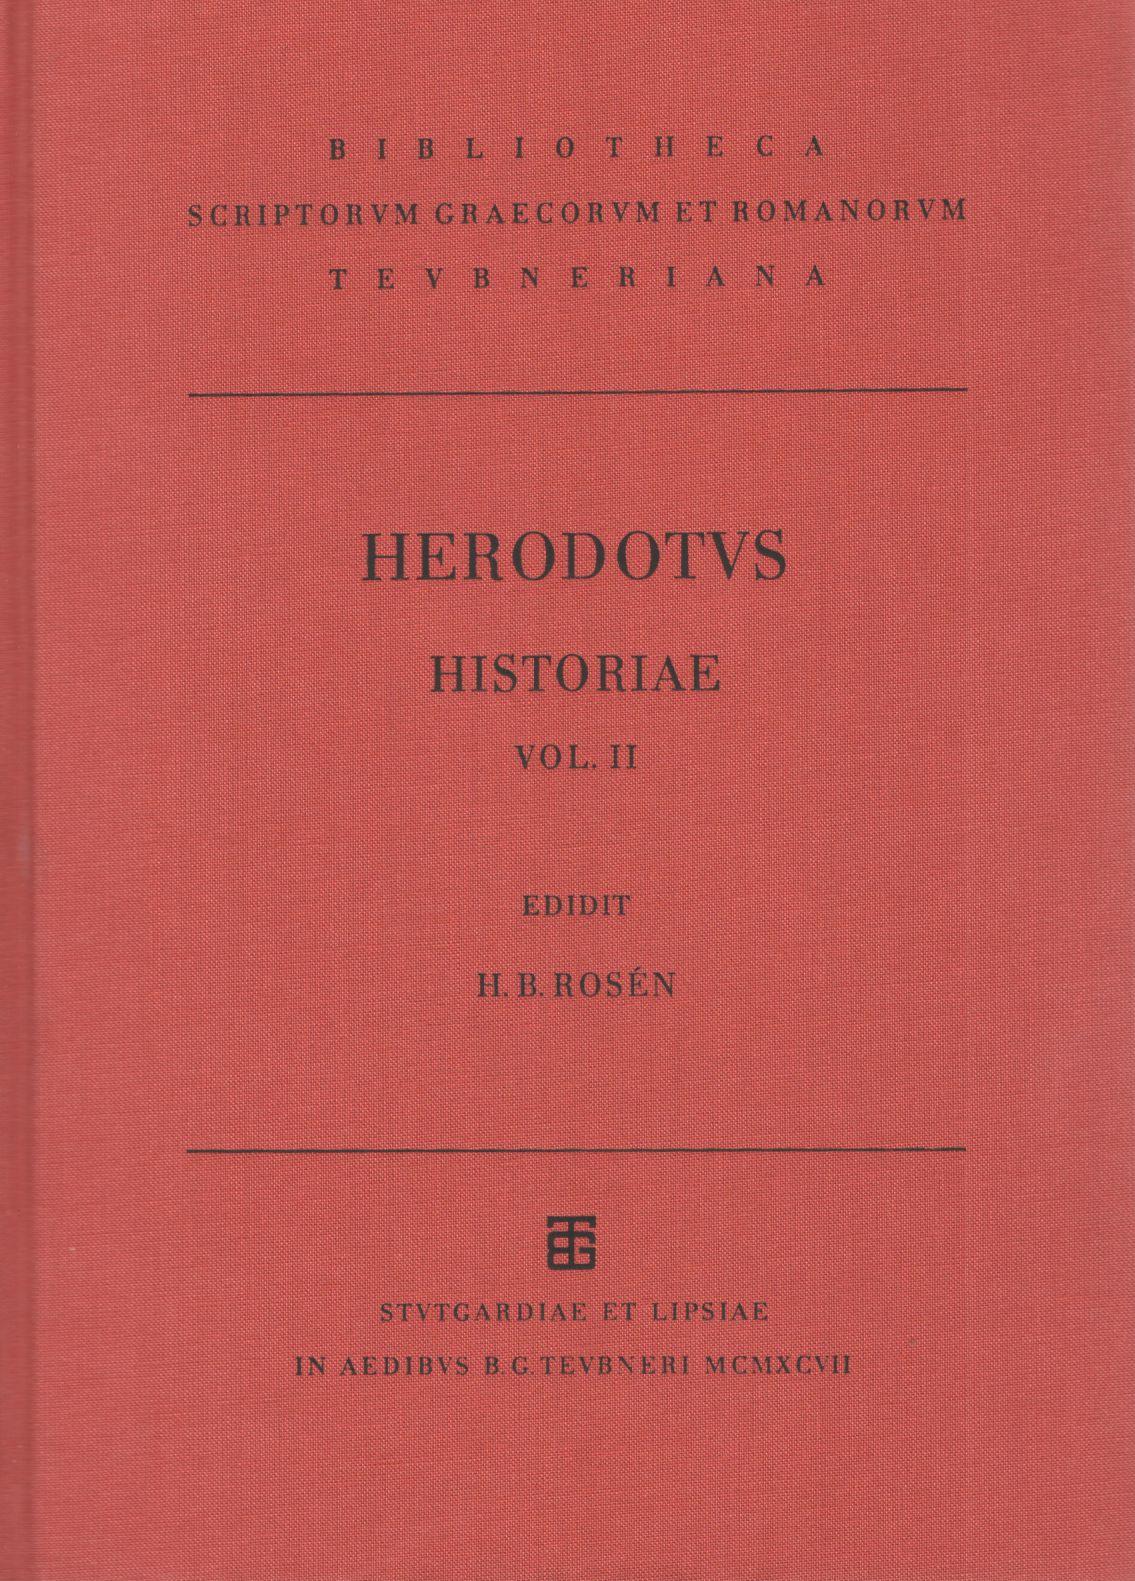 HERODOTI HISTORIAE VOL. II LIBRI V-IX